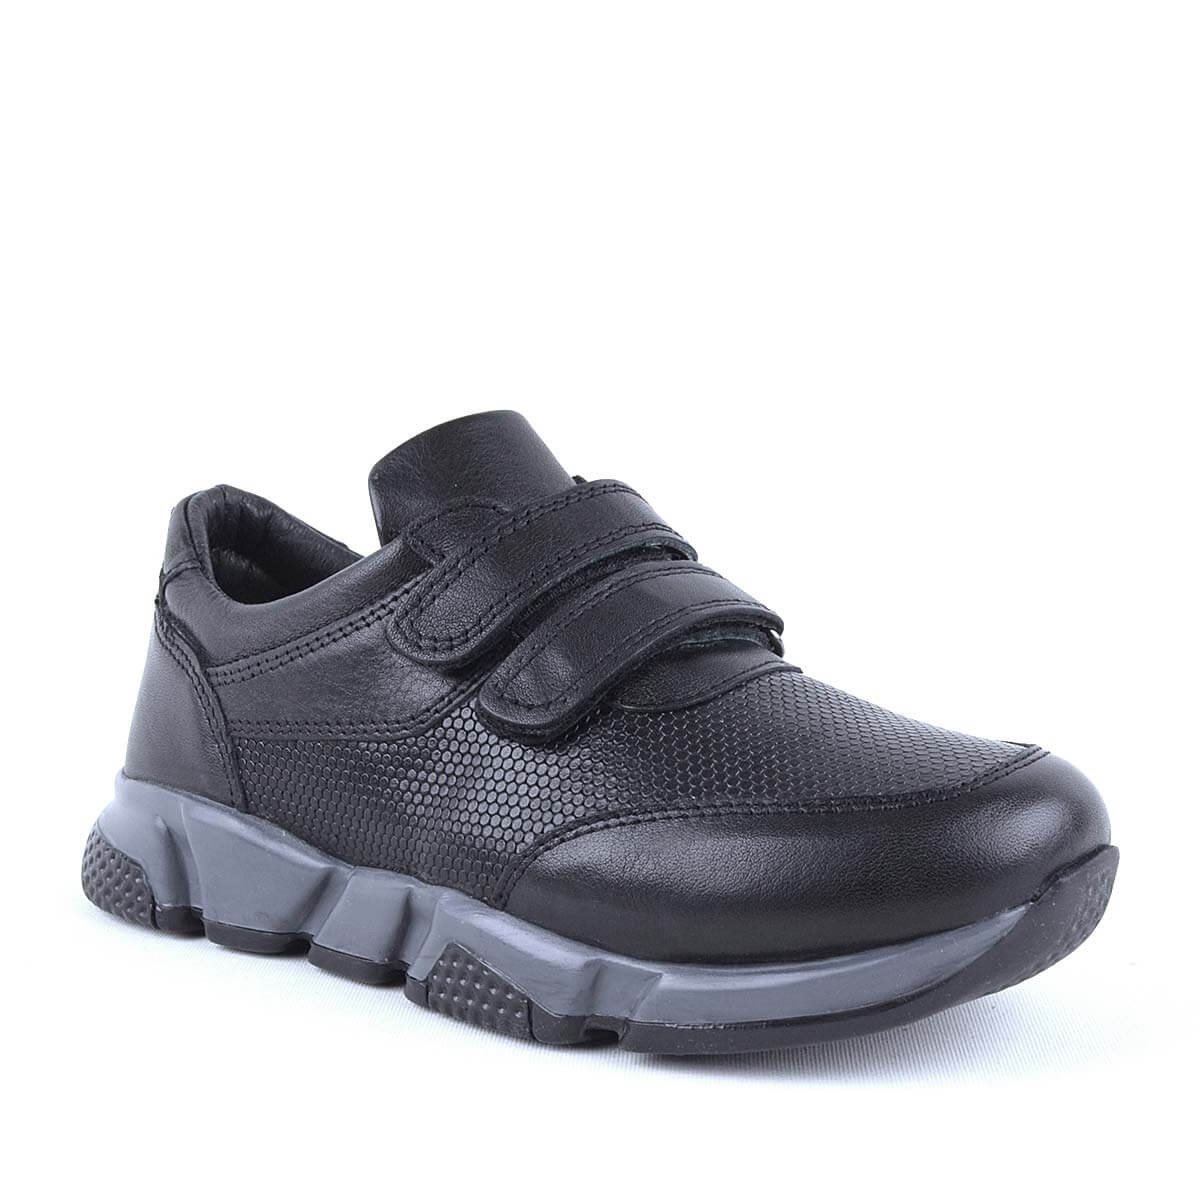 Hakiki Deri Siyah Cırtlı Unisex Çocuk Spor Okul Ayakkabısı - C506-S